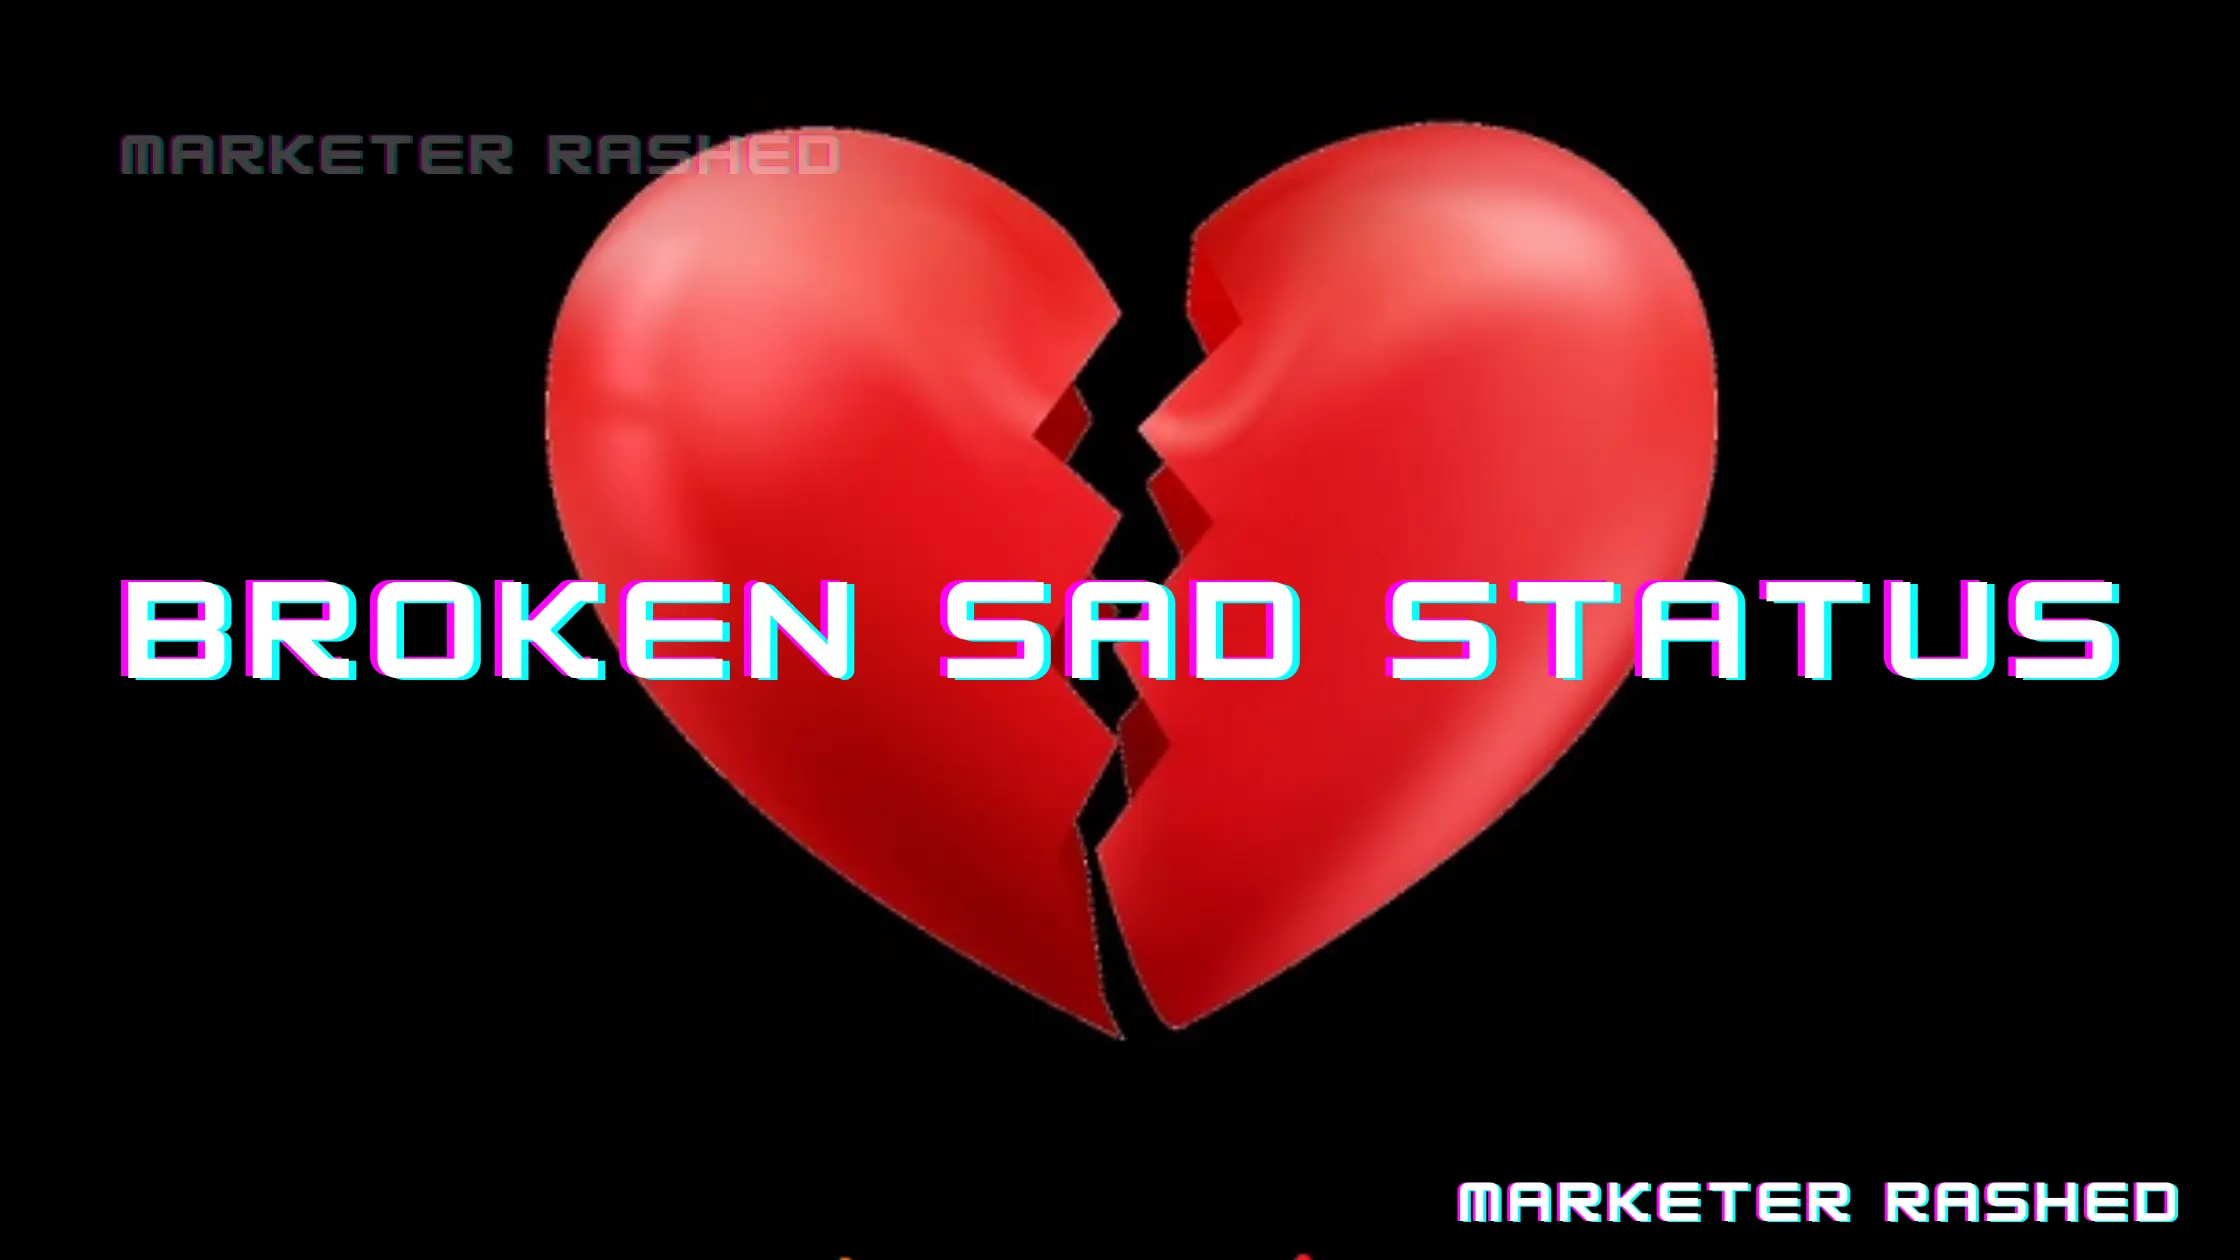 Broken sad status